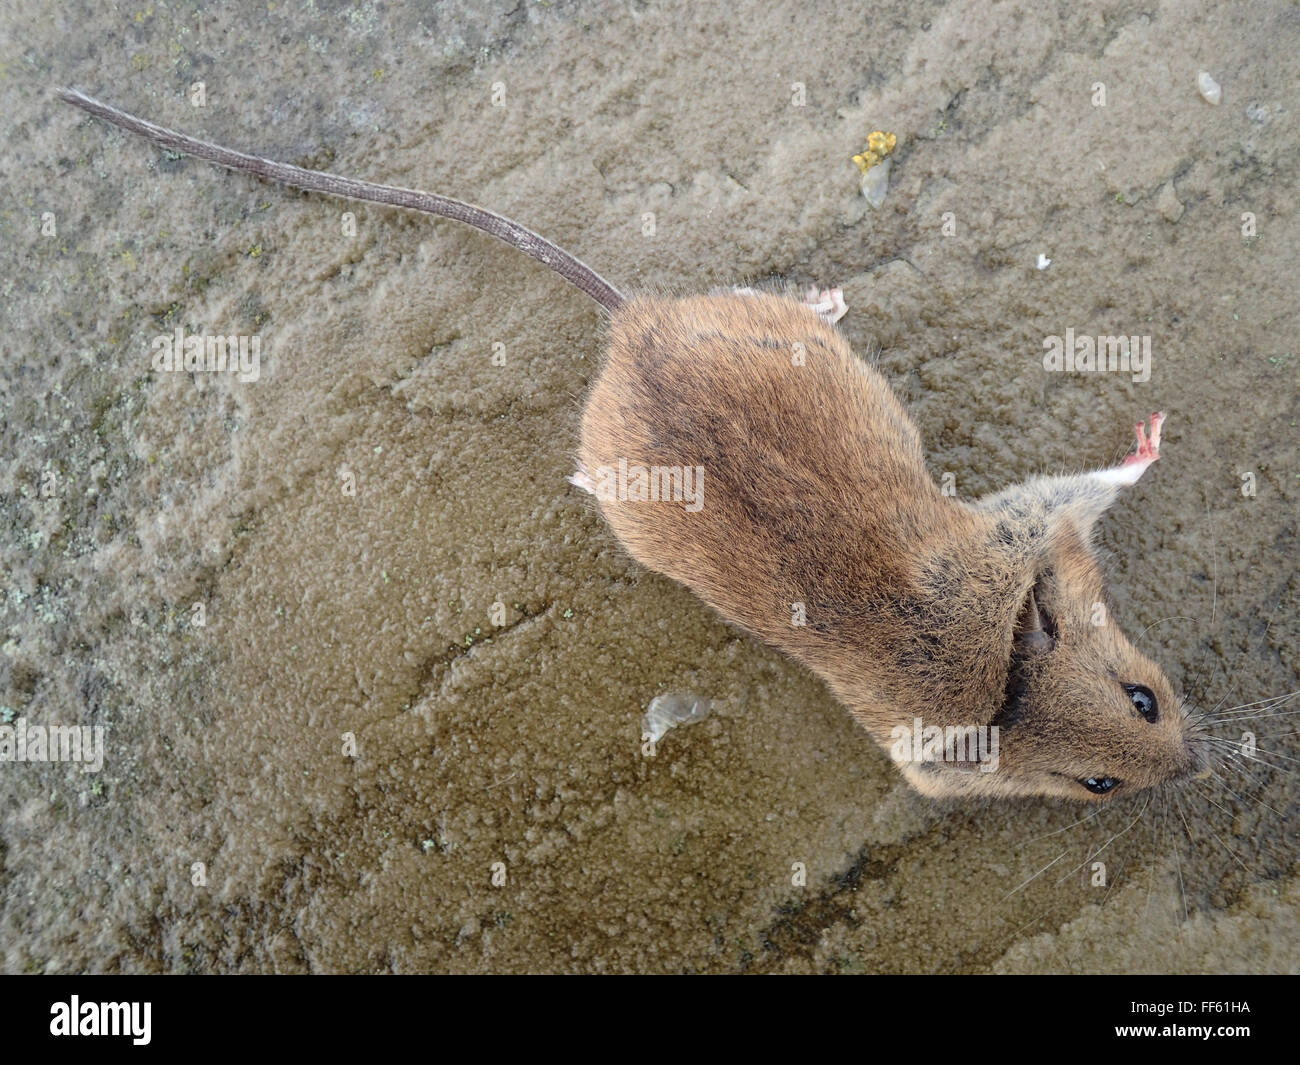 Vue dorsale de la maison morte souris (Mus musculus) tués par piège à souris, sur dalle Pavage calcaire Banque D'Images